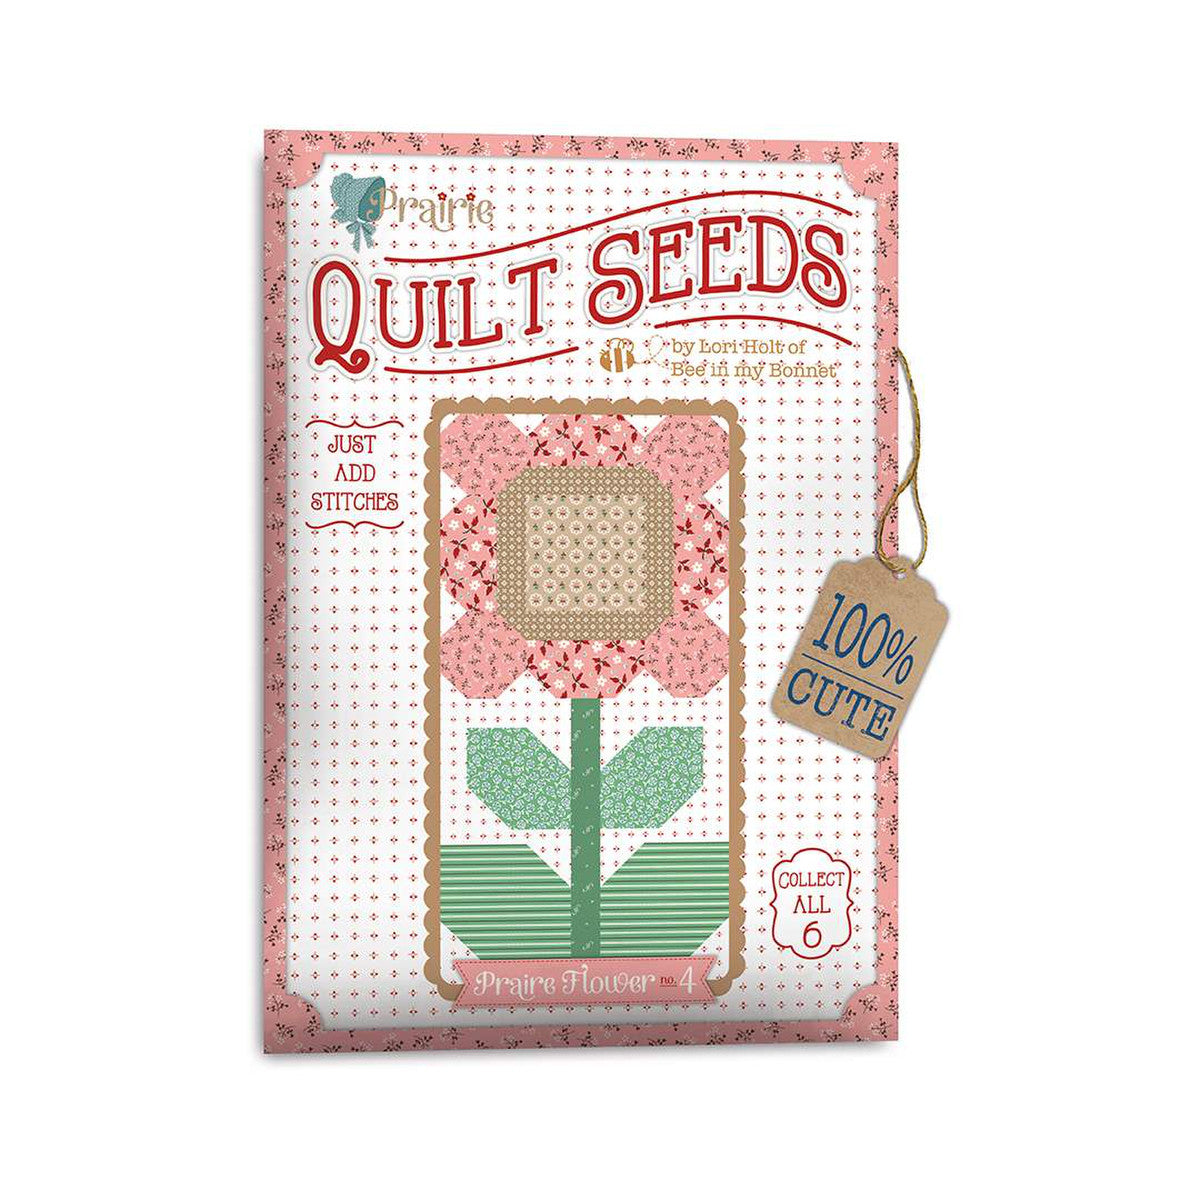 PATTERN, Flower 4 (Prairie Quilt Seeds) Pattern by Lori Holt